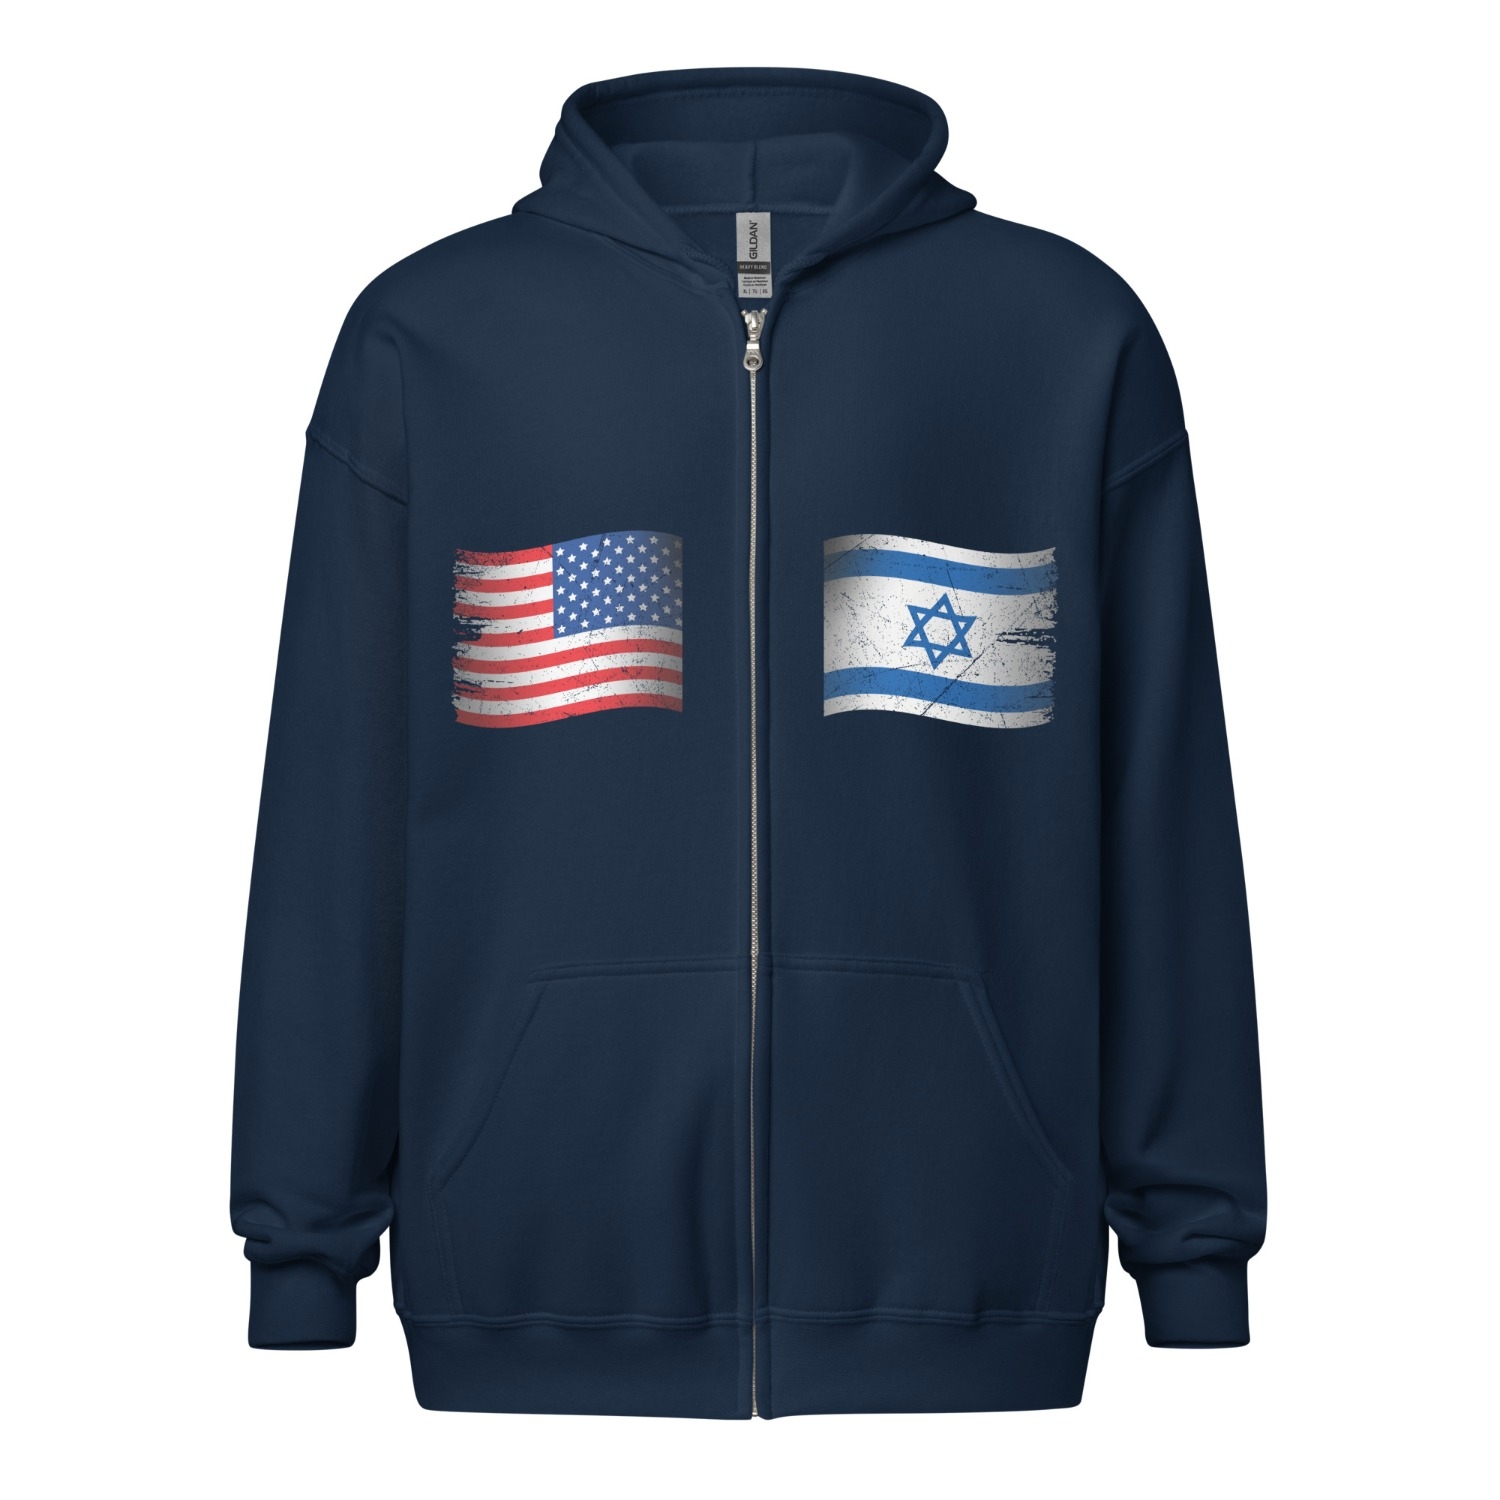 USA & Israel Flags Zip Hoodie - Unisex - 1